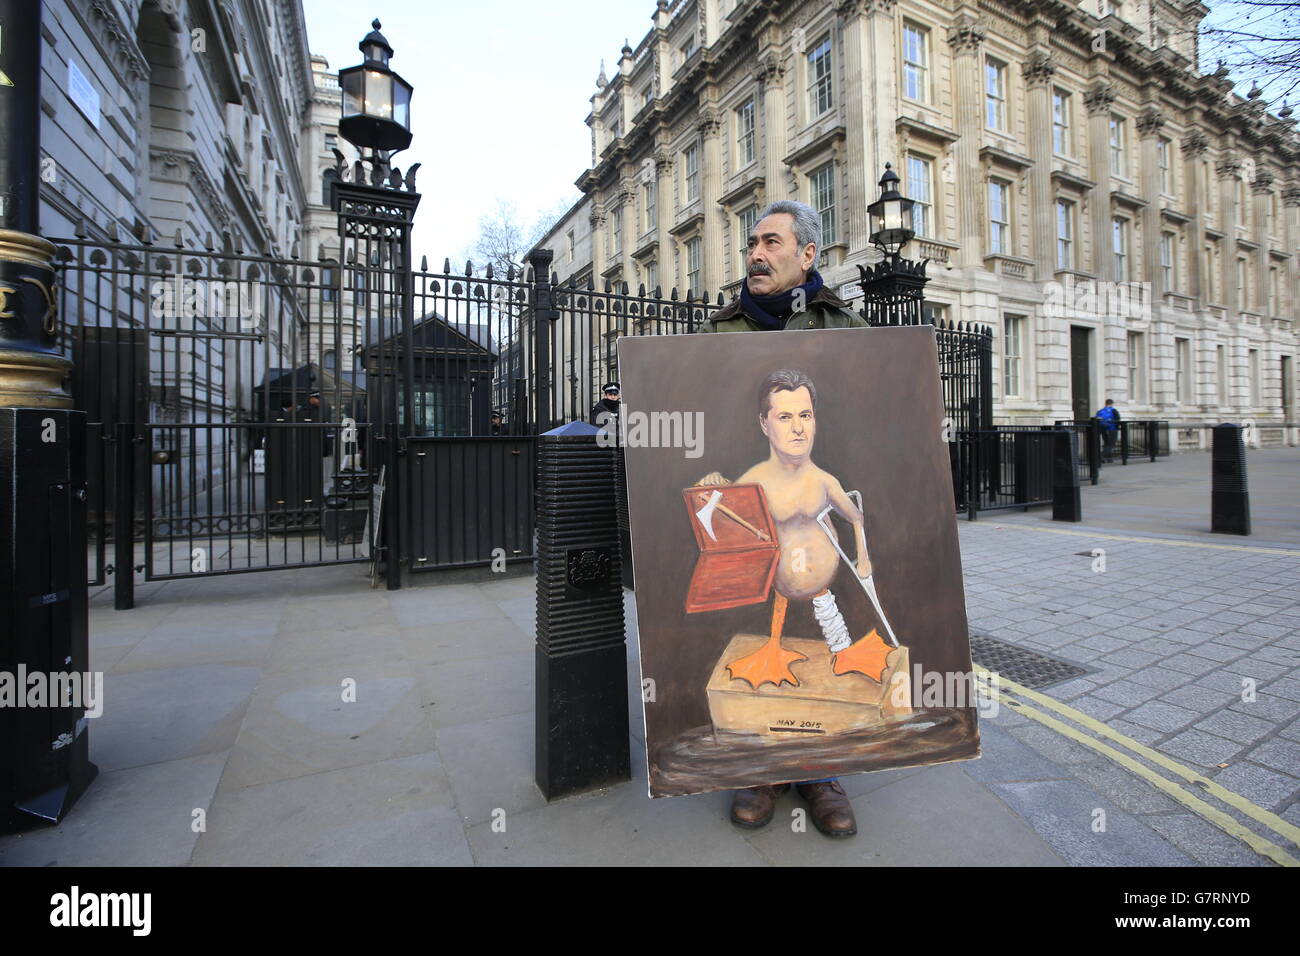 L'artiste satirique Kaya Mar devant Downing Street, Londres, avant que le budget annuel ne soit présenté par le chancelier George Osborne. Banque D'Images